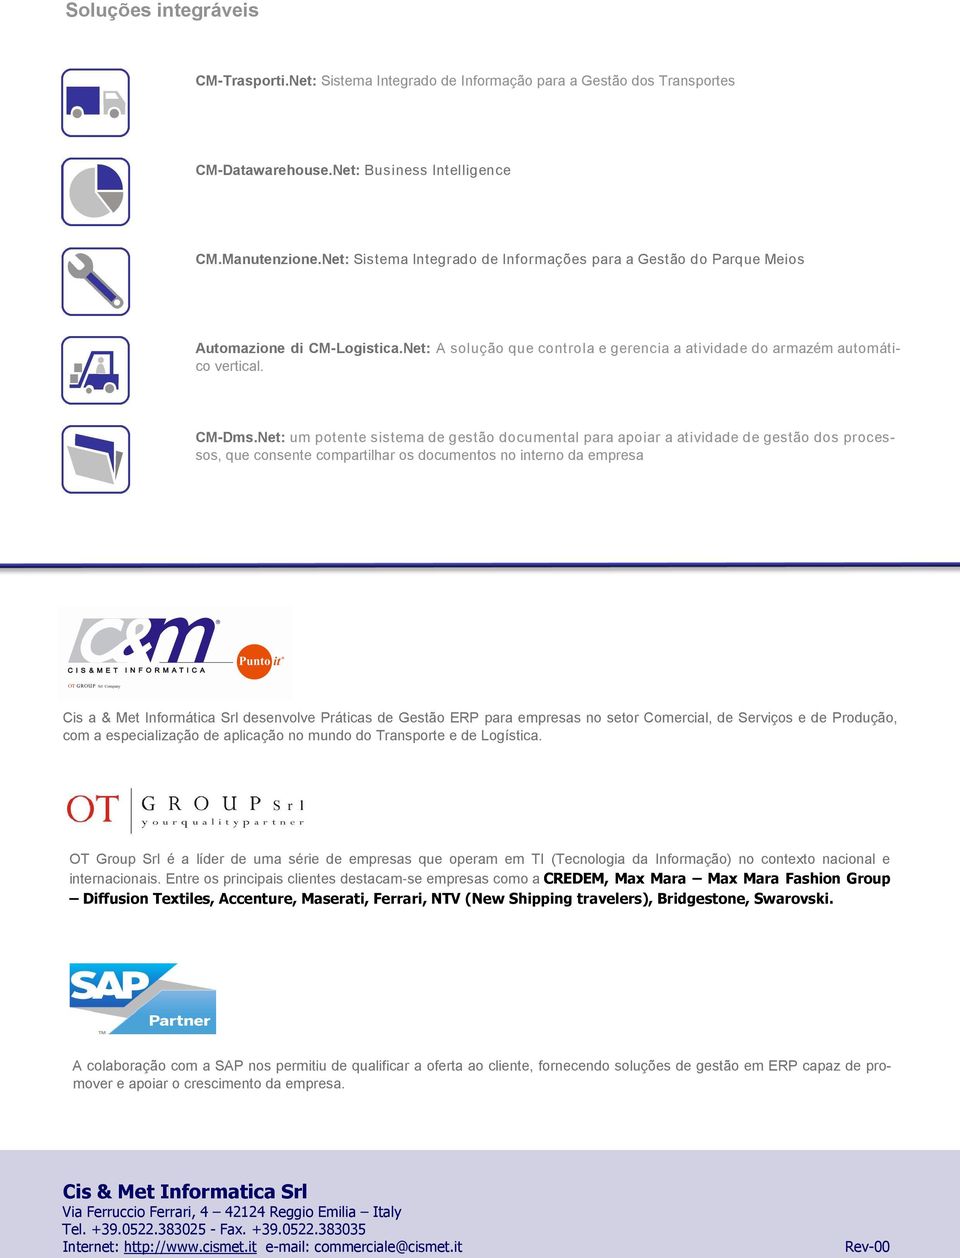 Net: um potente sistema de gestão documental para apoiar a atividade de gestão dos processos, que consente compartilhar os documentos no interno da empresa Cis a & Met Informática Srl desenvolve